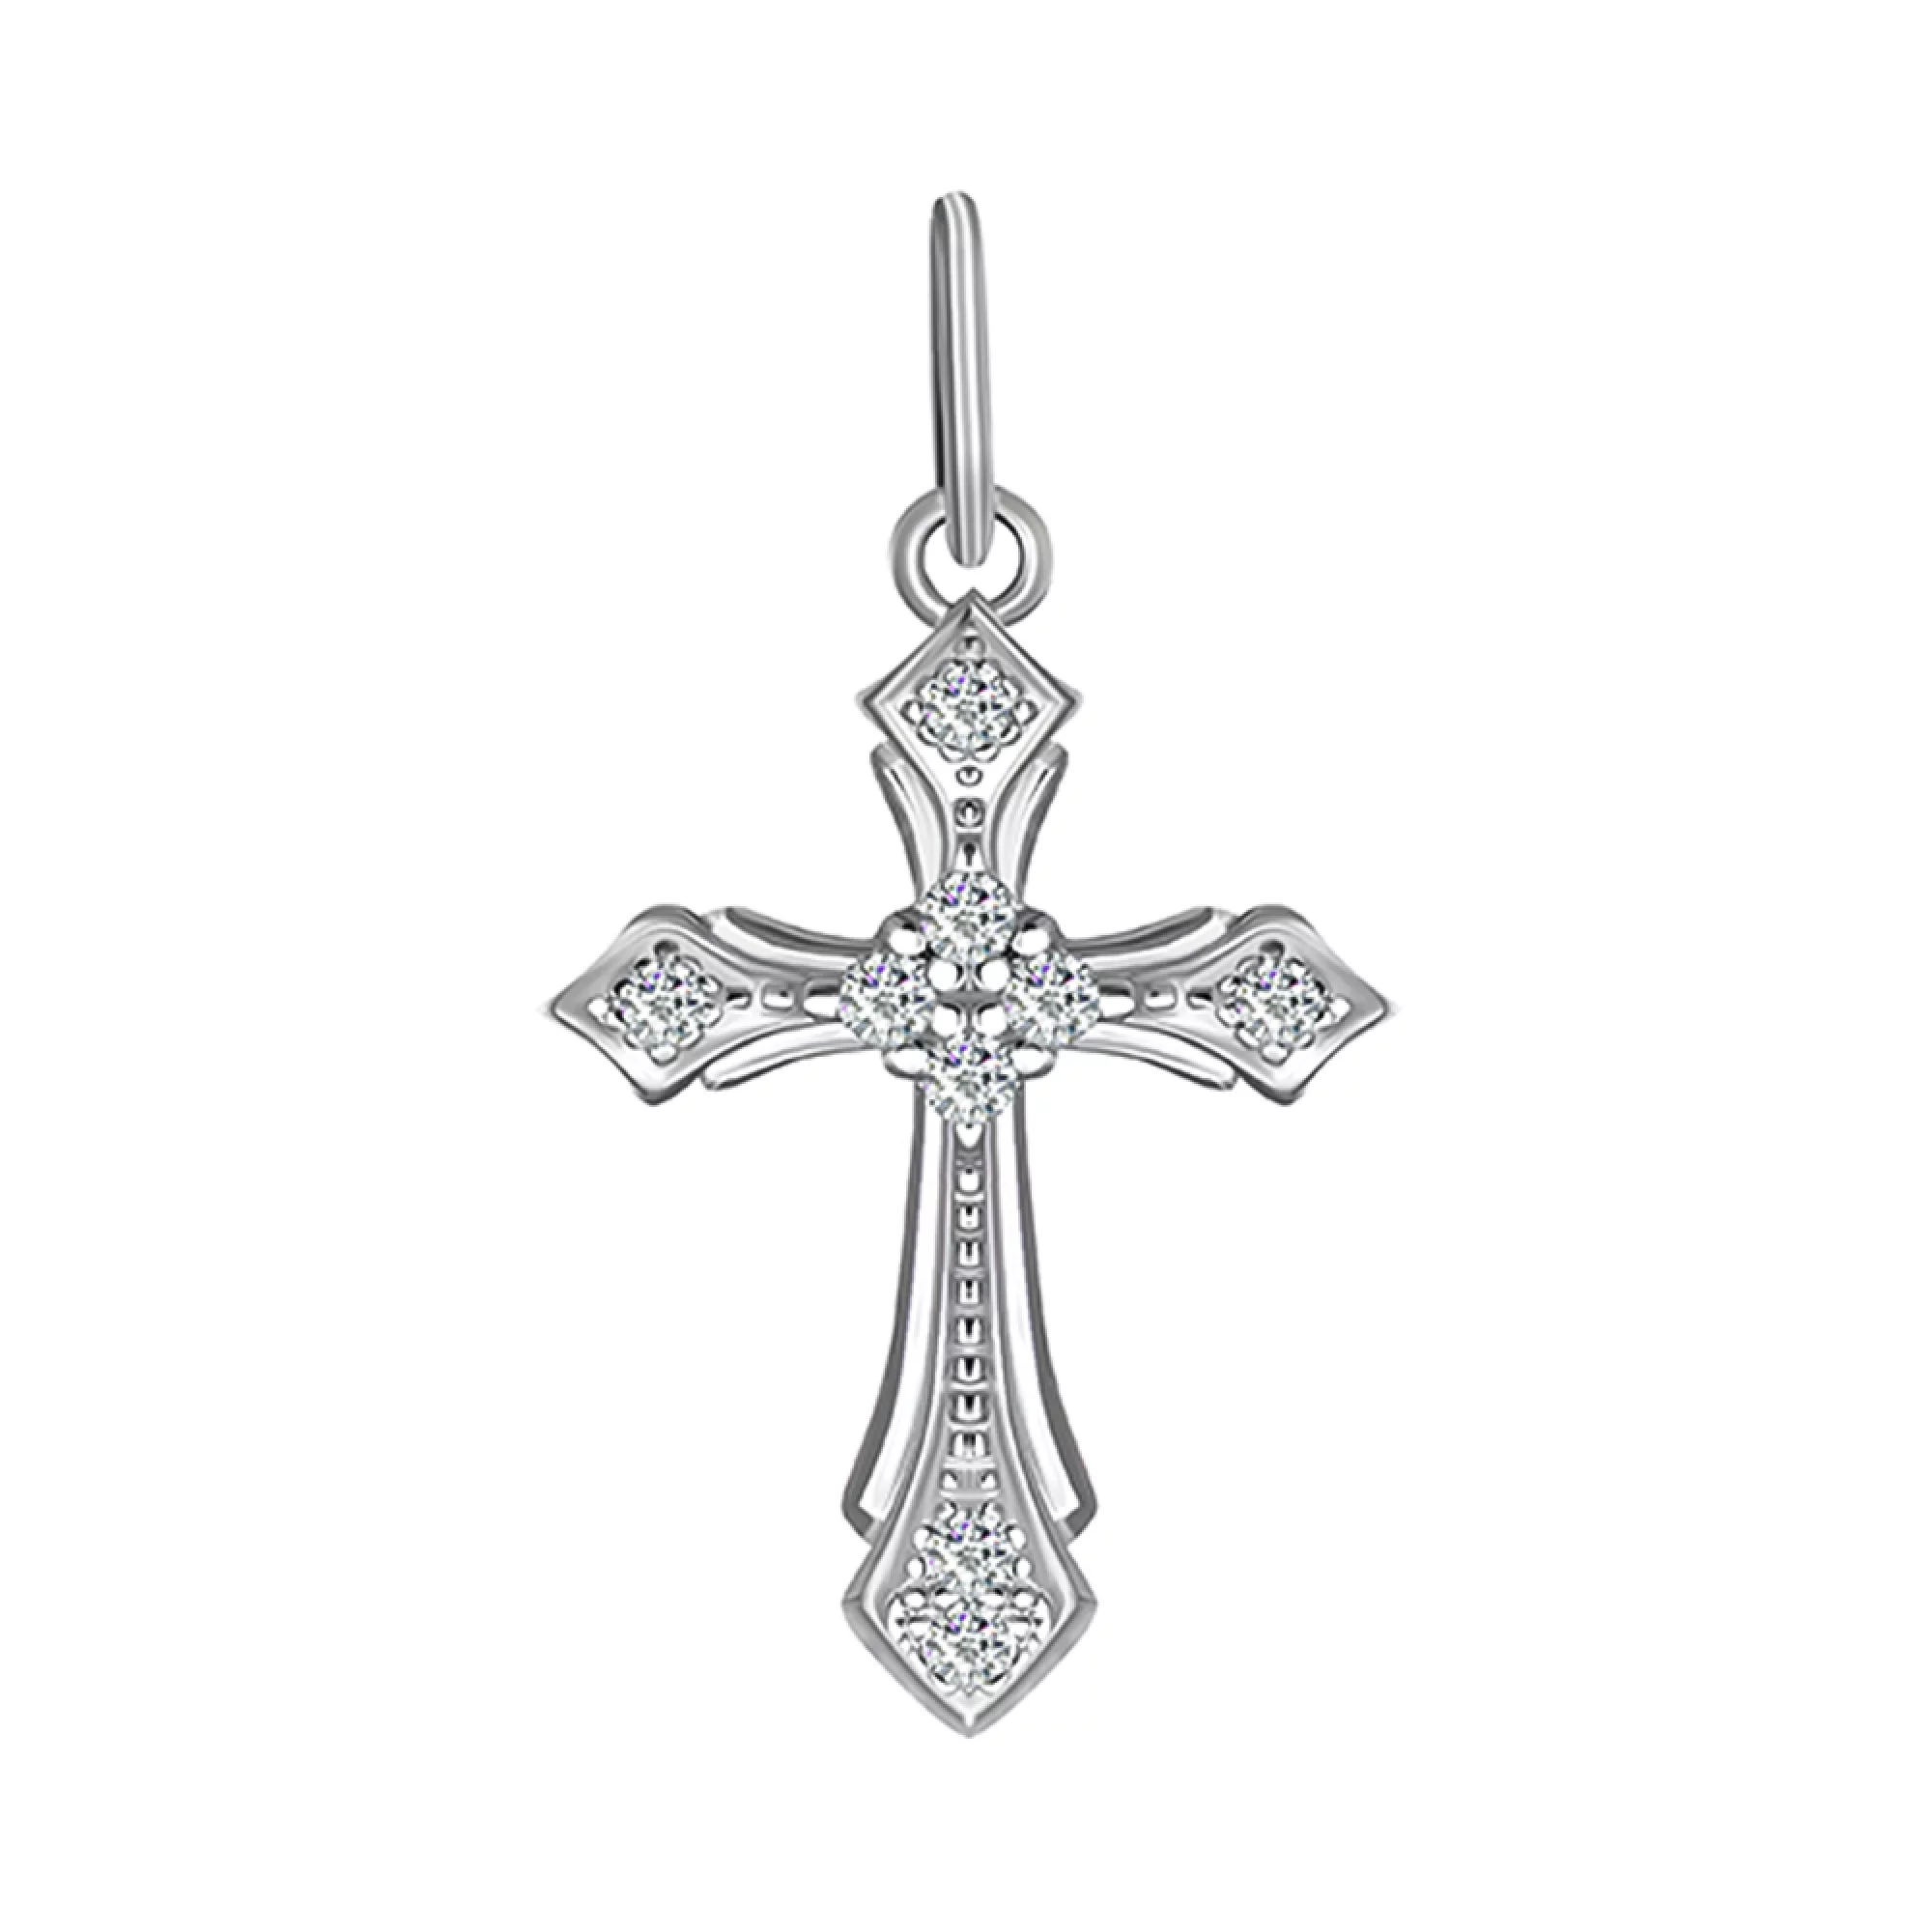 Крестик из серебра с фианитами - 1507825 – изображение 1